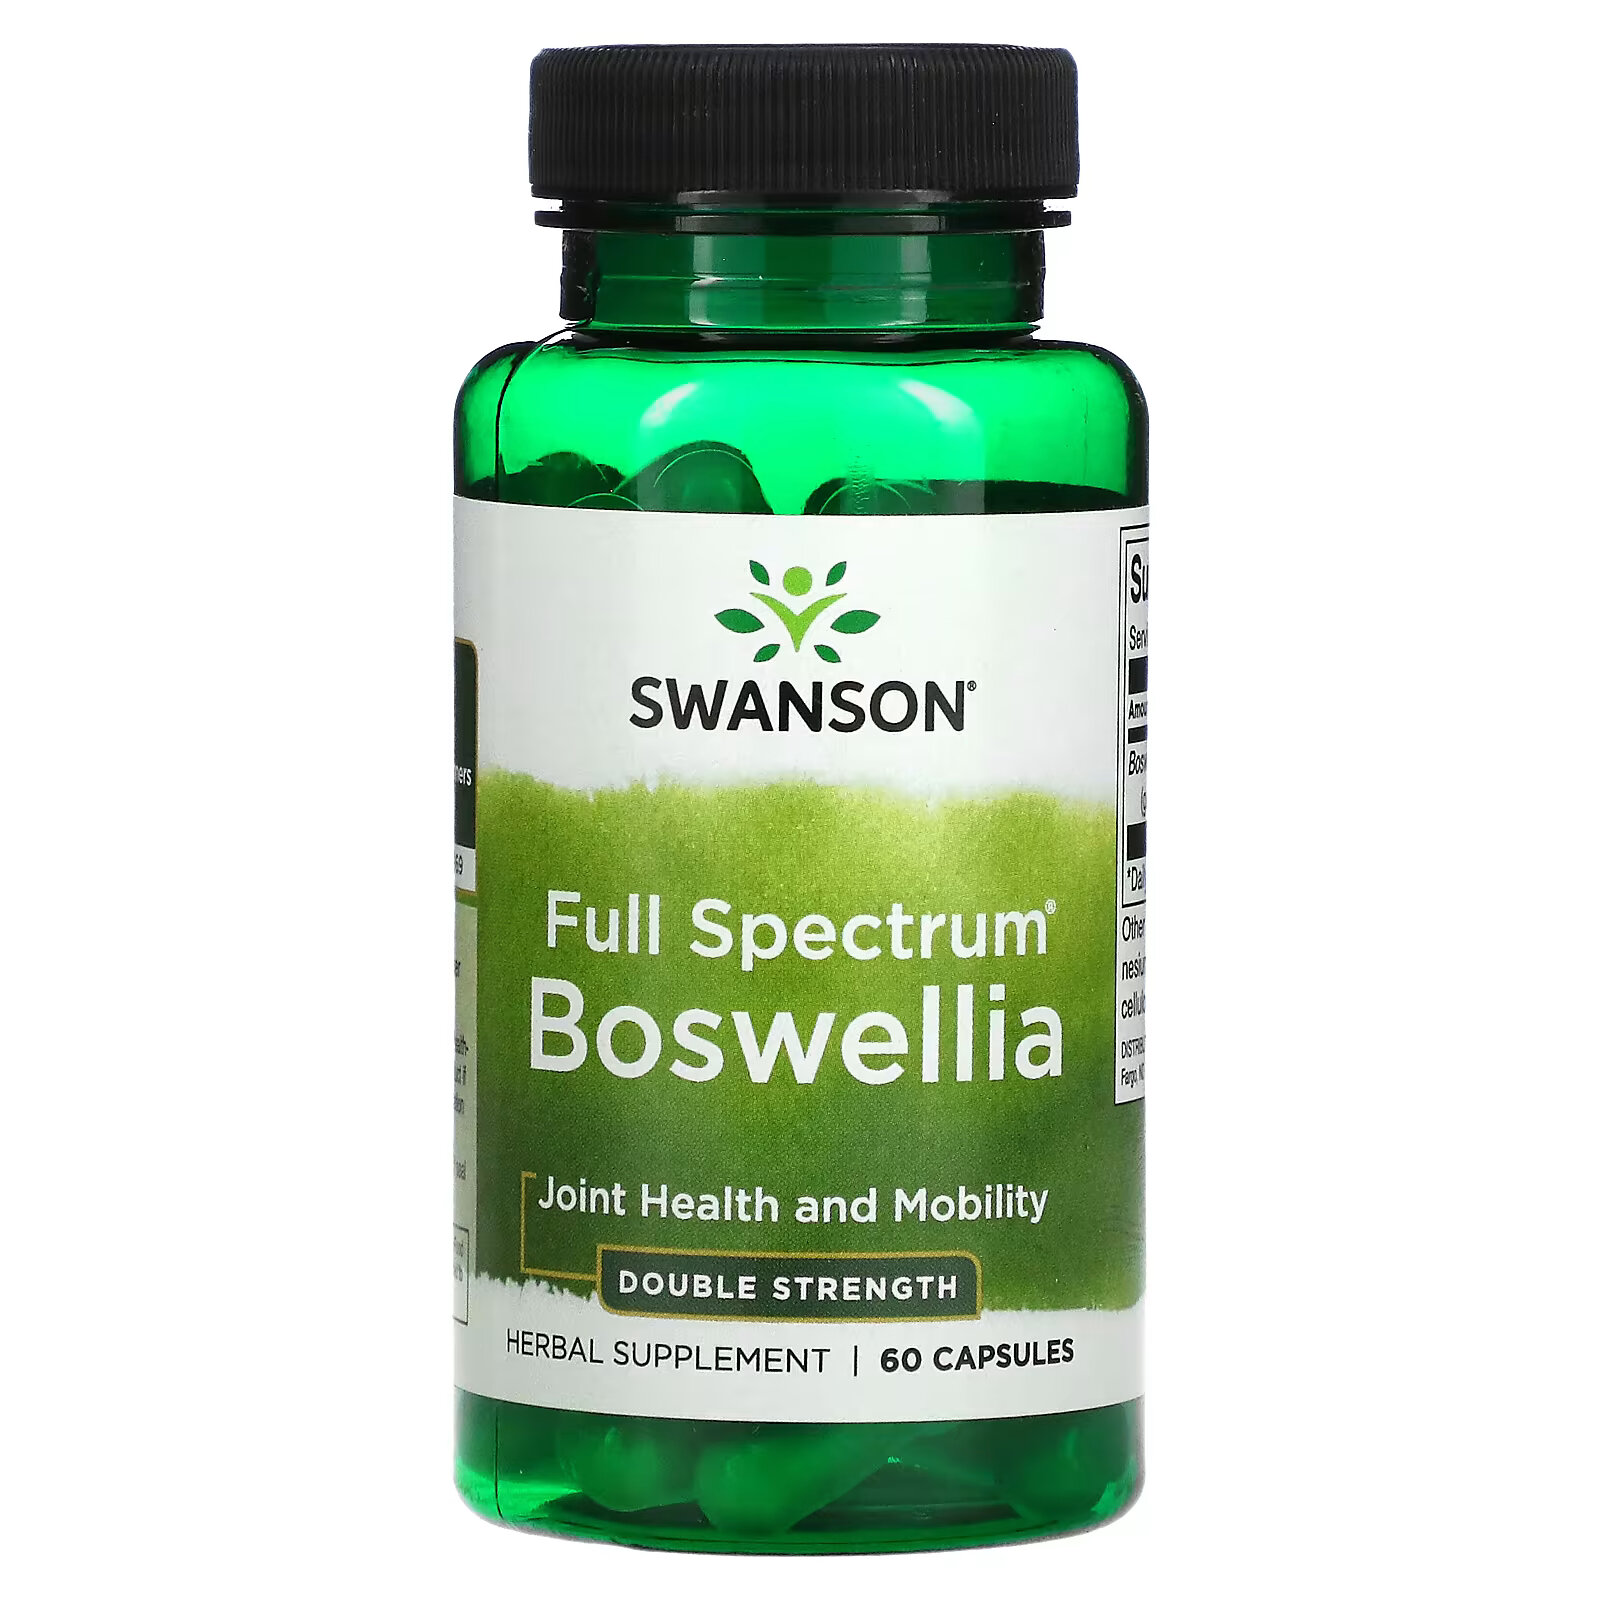 Swanson, Boswellia полного спектра, двойная сила действия, 60 капсул innovixlabs витамин k2 полного спектра действия 90 капсул